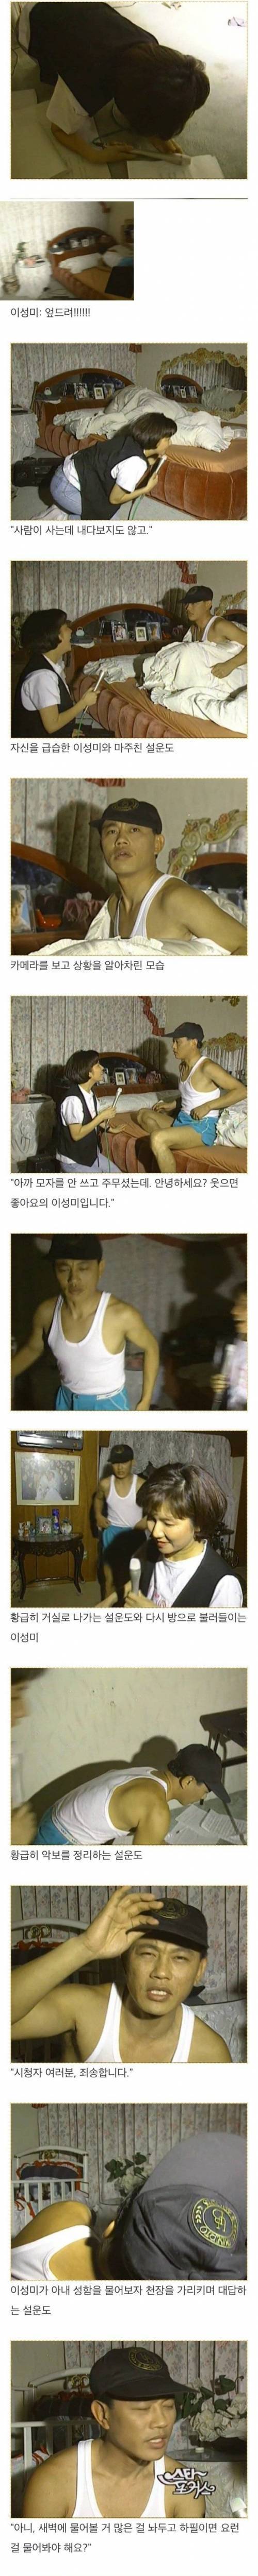 [스압] 속옷차림으로 방송출연한 설운도..jpg